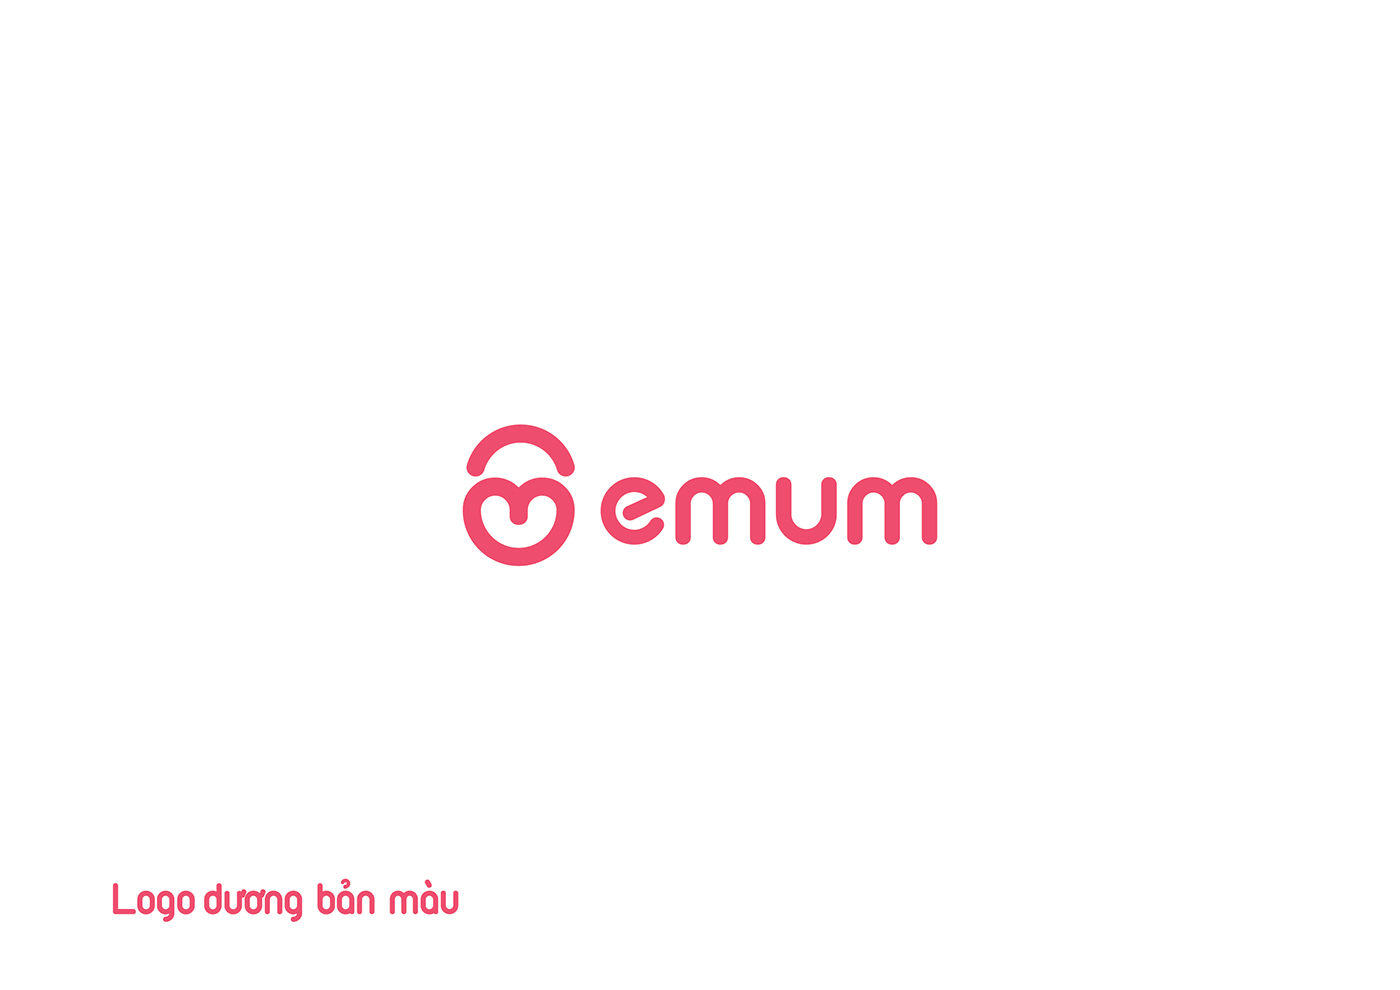 vietnam hanoi tuphan emum Mum baby brand identity logo